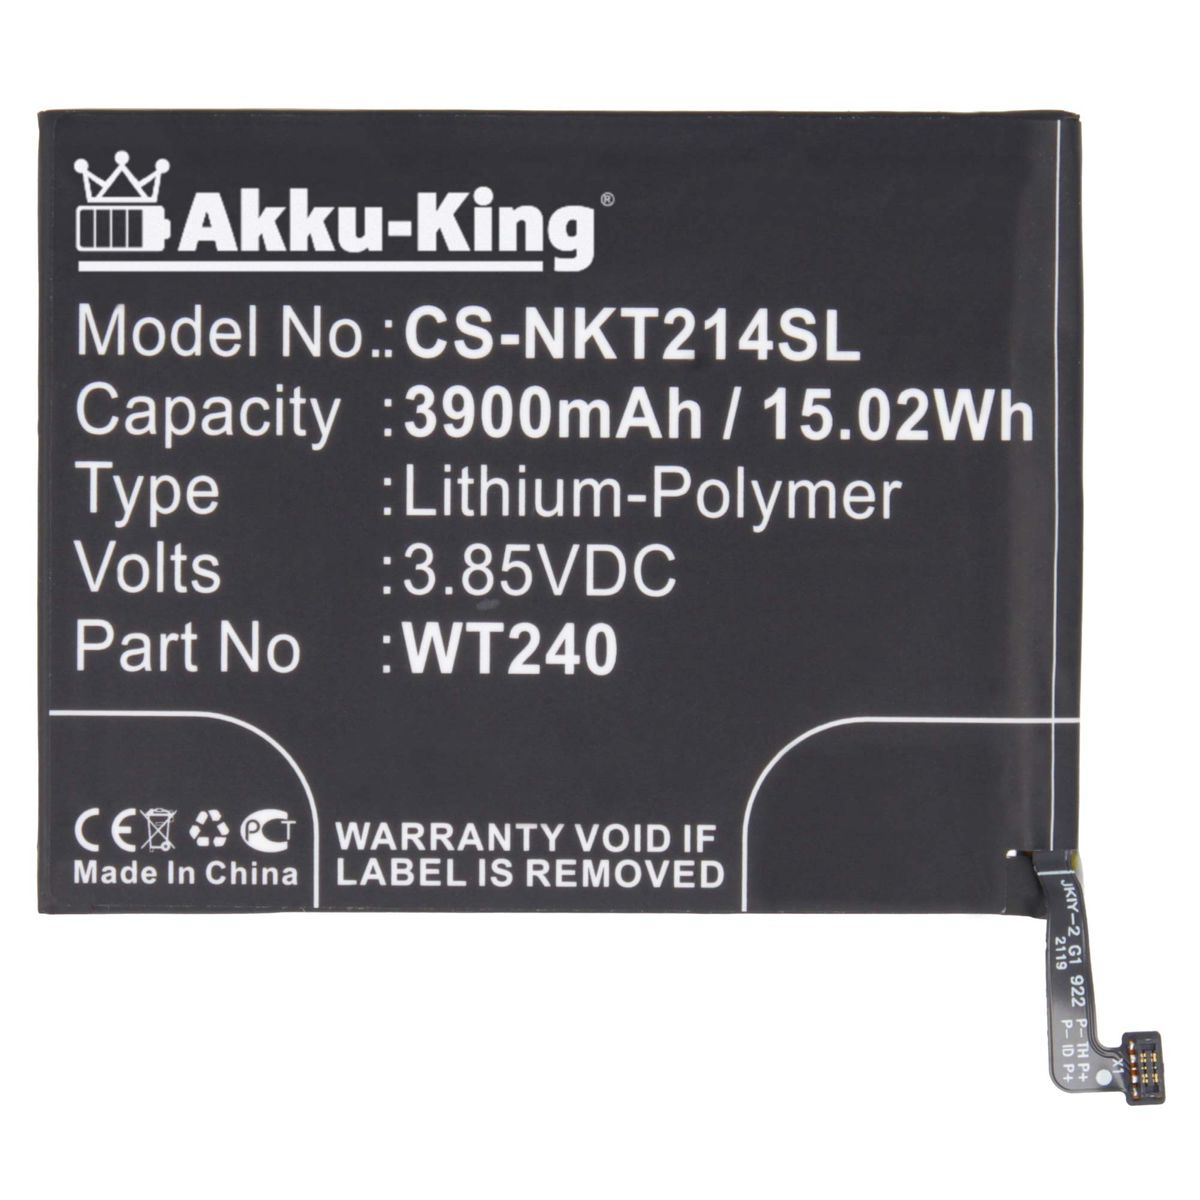 AKKU-KING Akku mit WT240 kompatibel 3.85 Li-Polymer 3900mAh Volt, Handy-Akku, Nokia